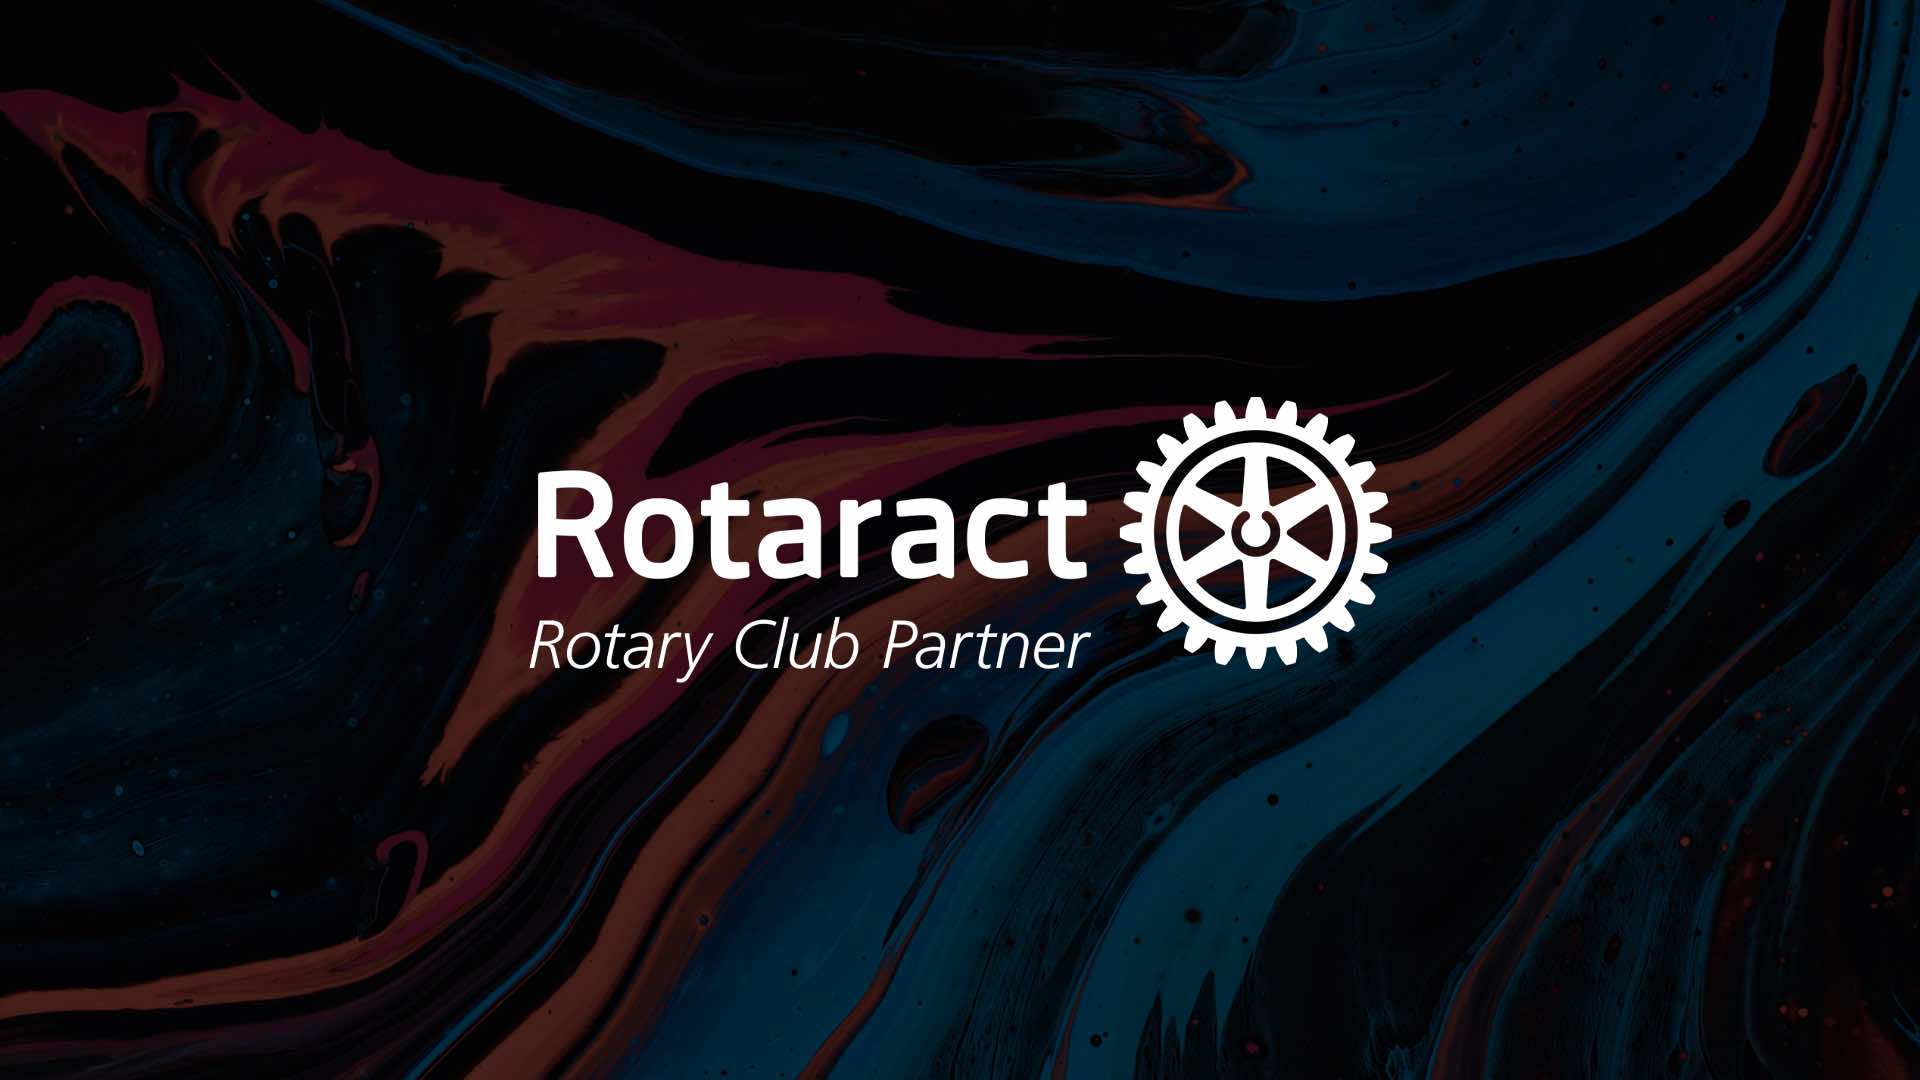 What's Rotaract?